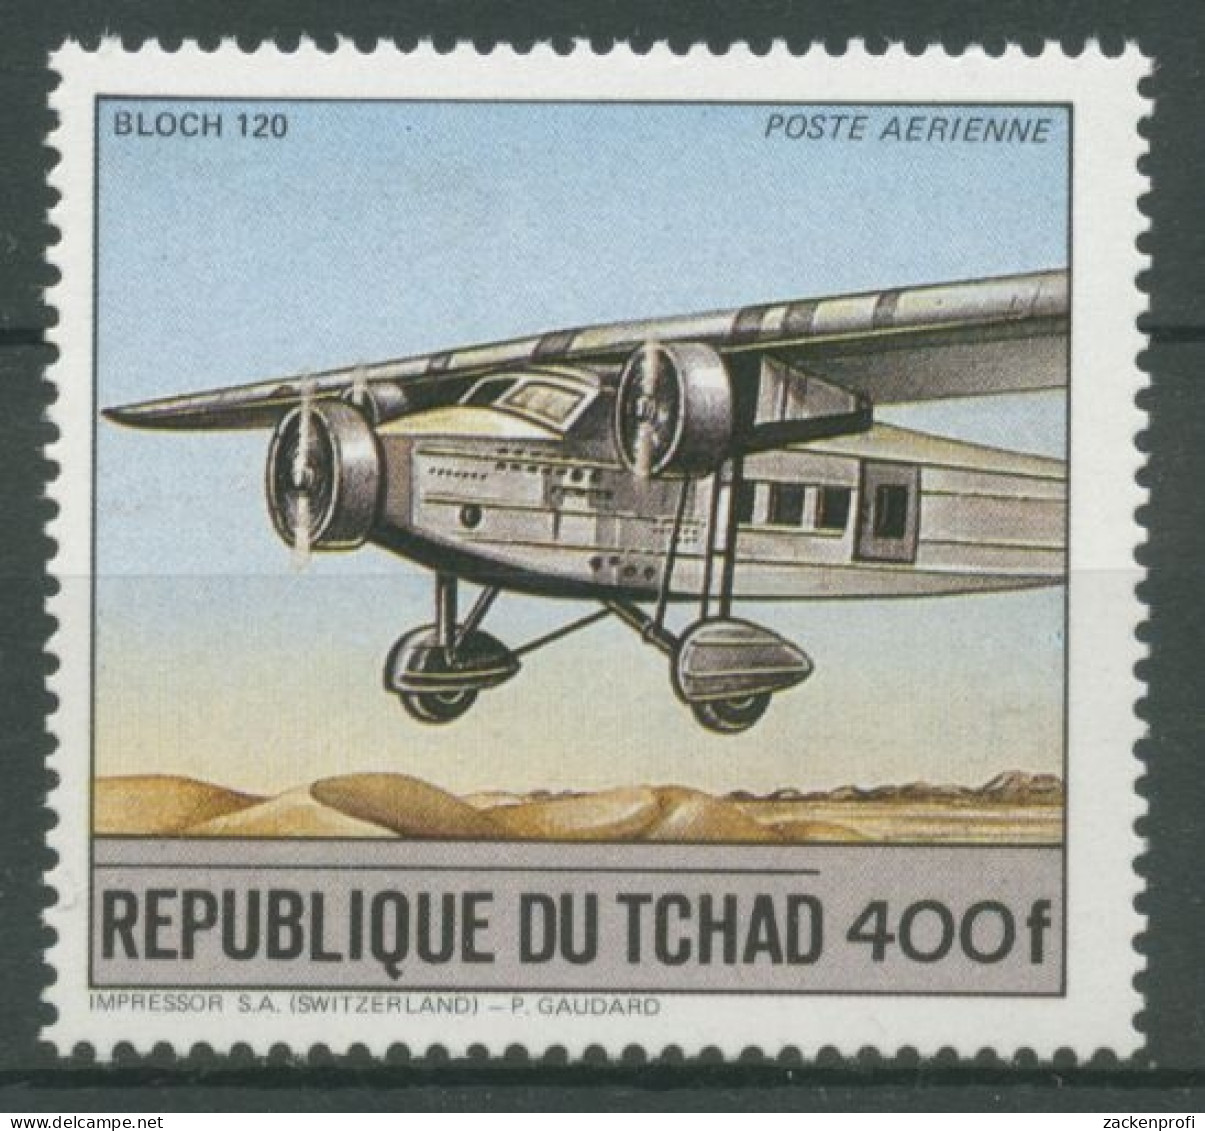 Tschad 1984 Verkehrsmittel Bloch 120 Flugzeug 1065 A Postfrisch - Tschad (1960-...)